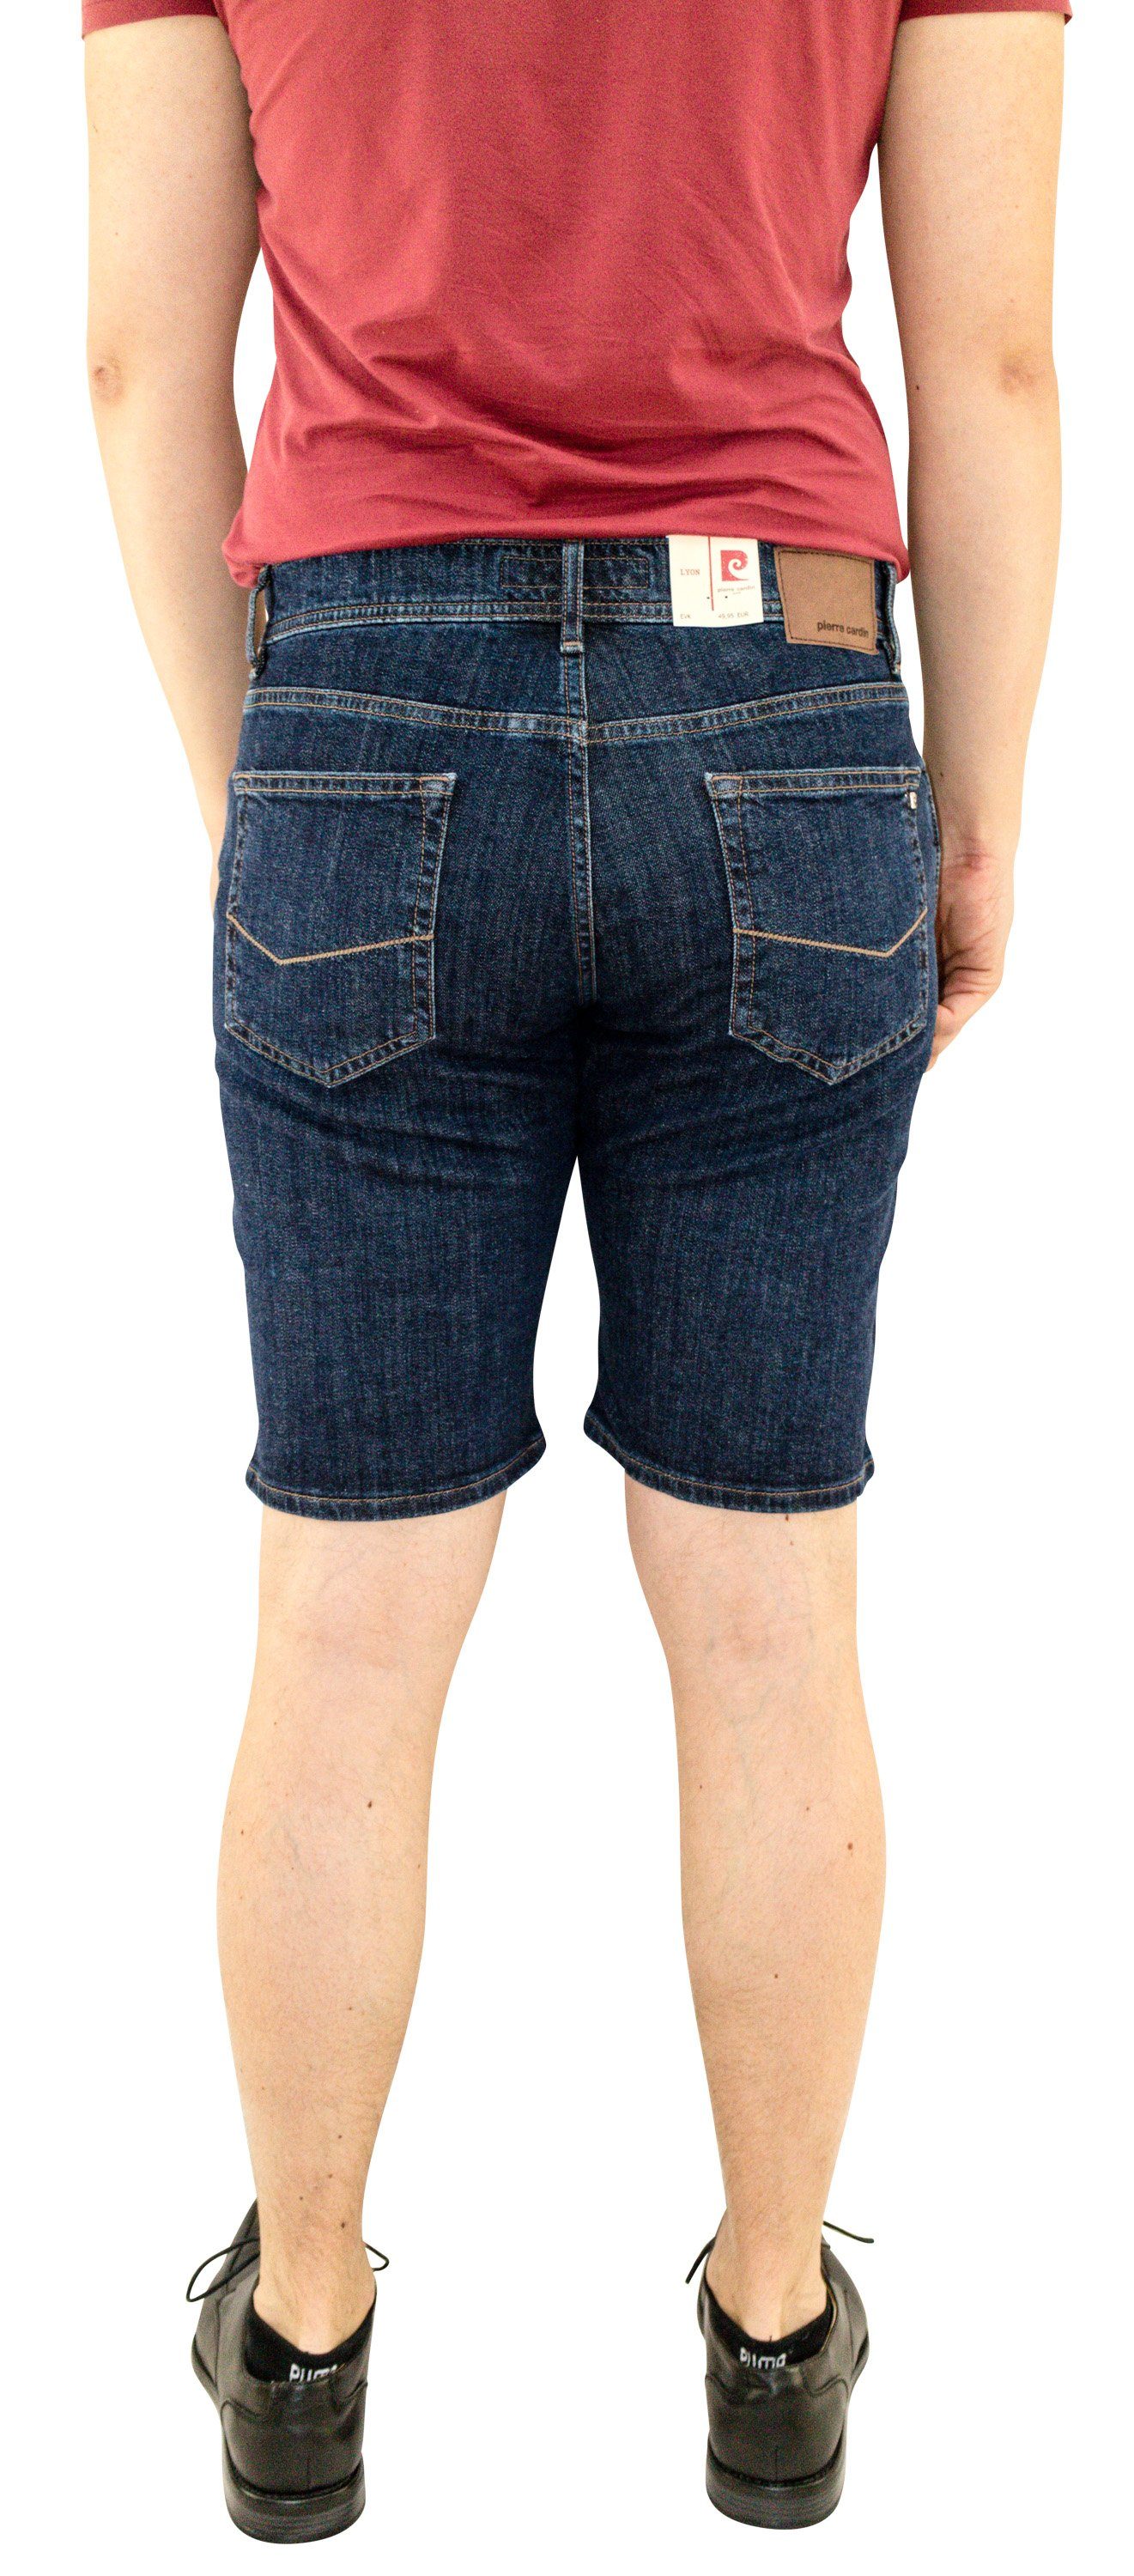 LYON blue Pierre Cardin CARDIN 5-Pocket-Jeans SHORTS 7611.07 dark PIERRE 34221